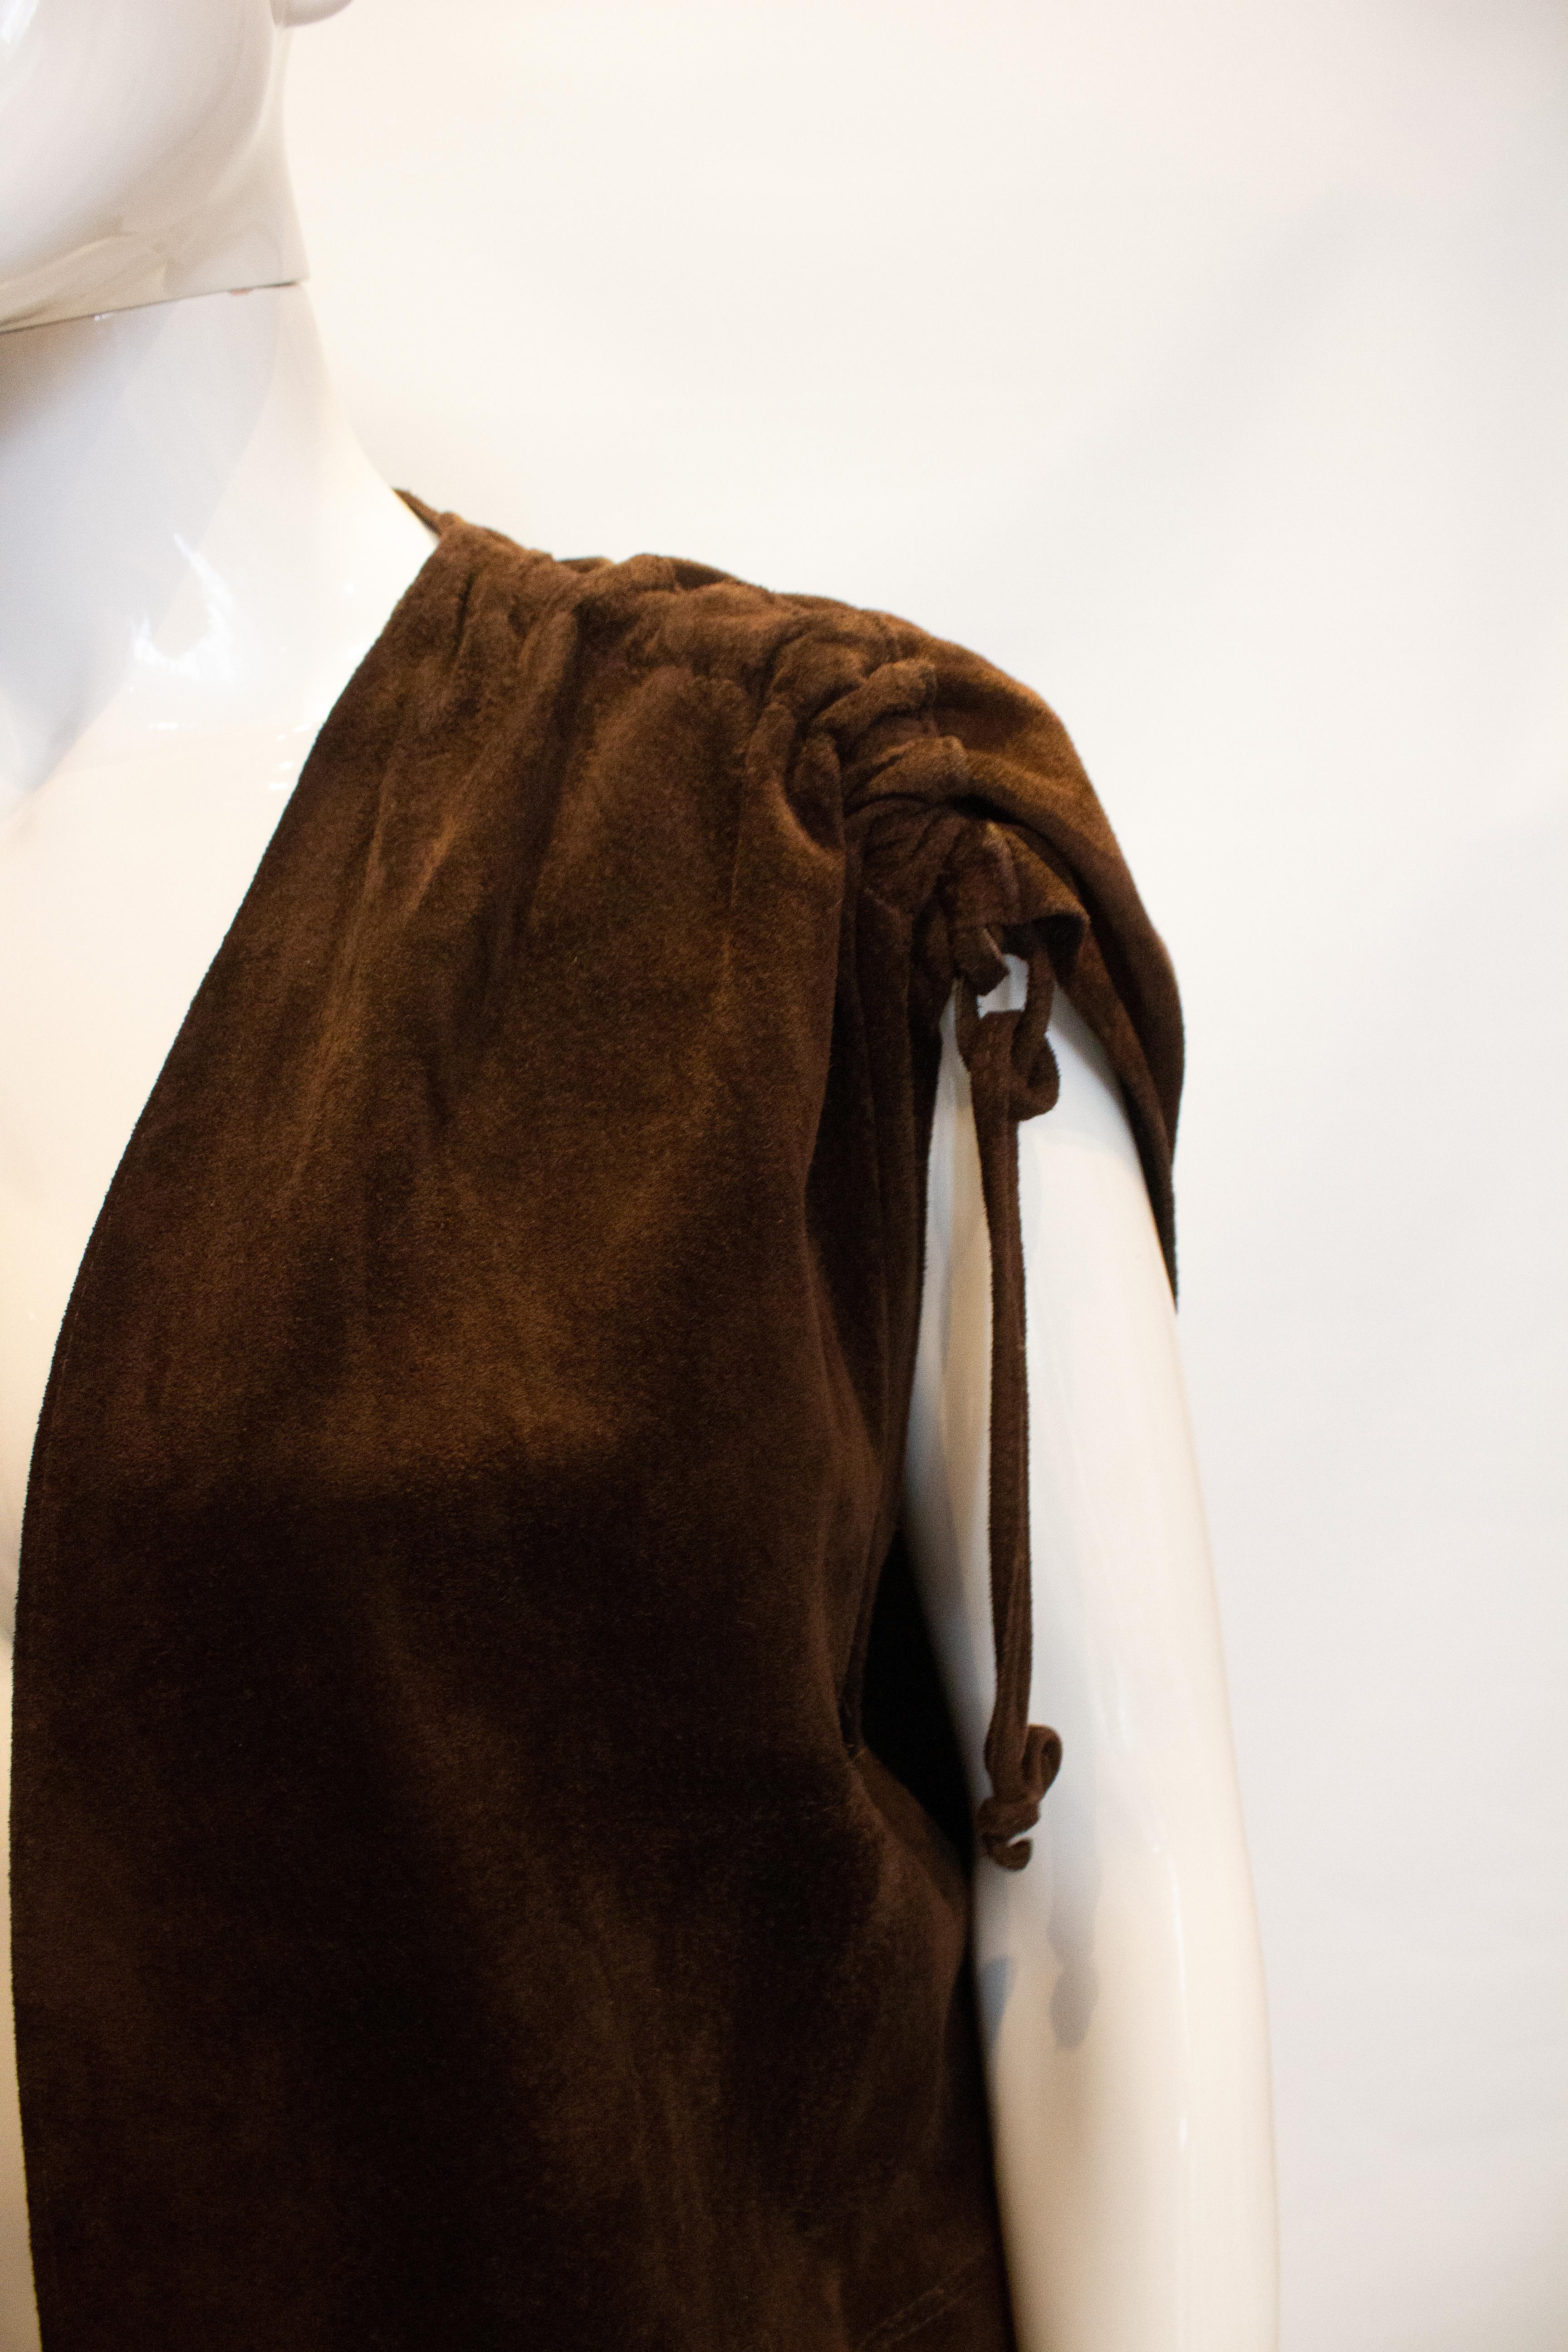 Idéal pour l'automne, un gilet vintage en daim marron de Beged Or. Le gilet a des fronces sur les épaules, deux poches avant et un lien à la taille.
Mesures Buste jusqu'à 40'', longueur 35''